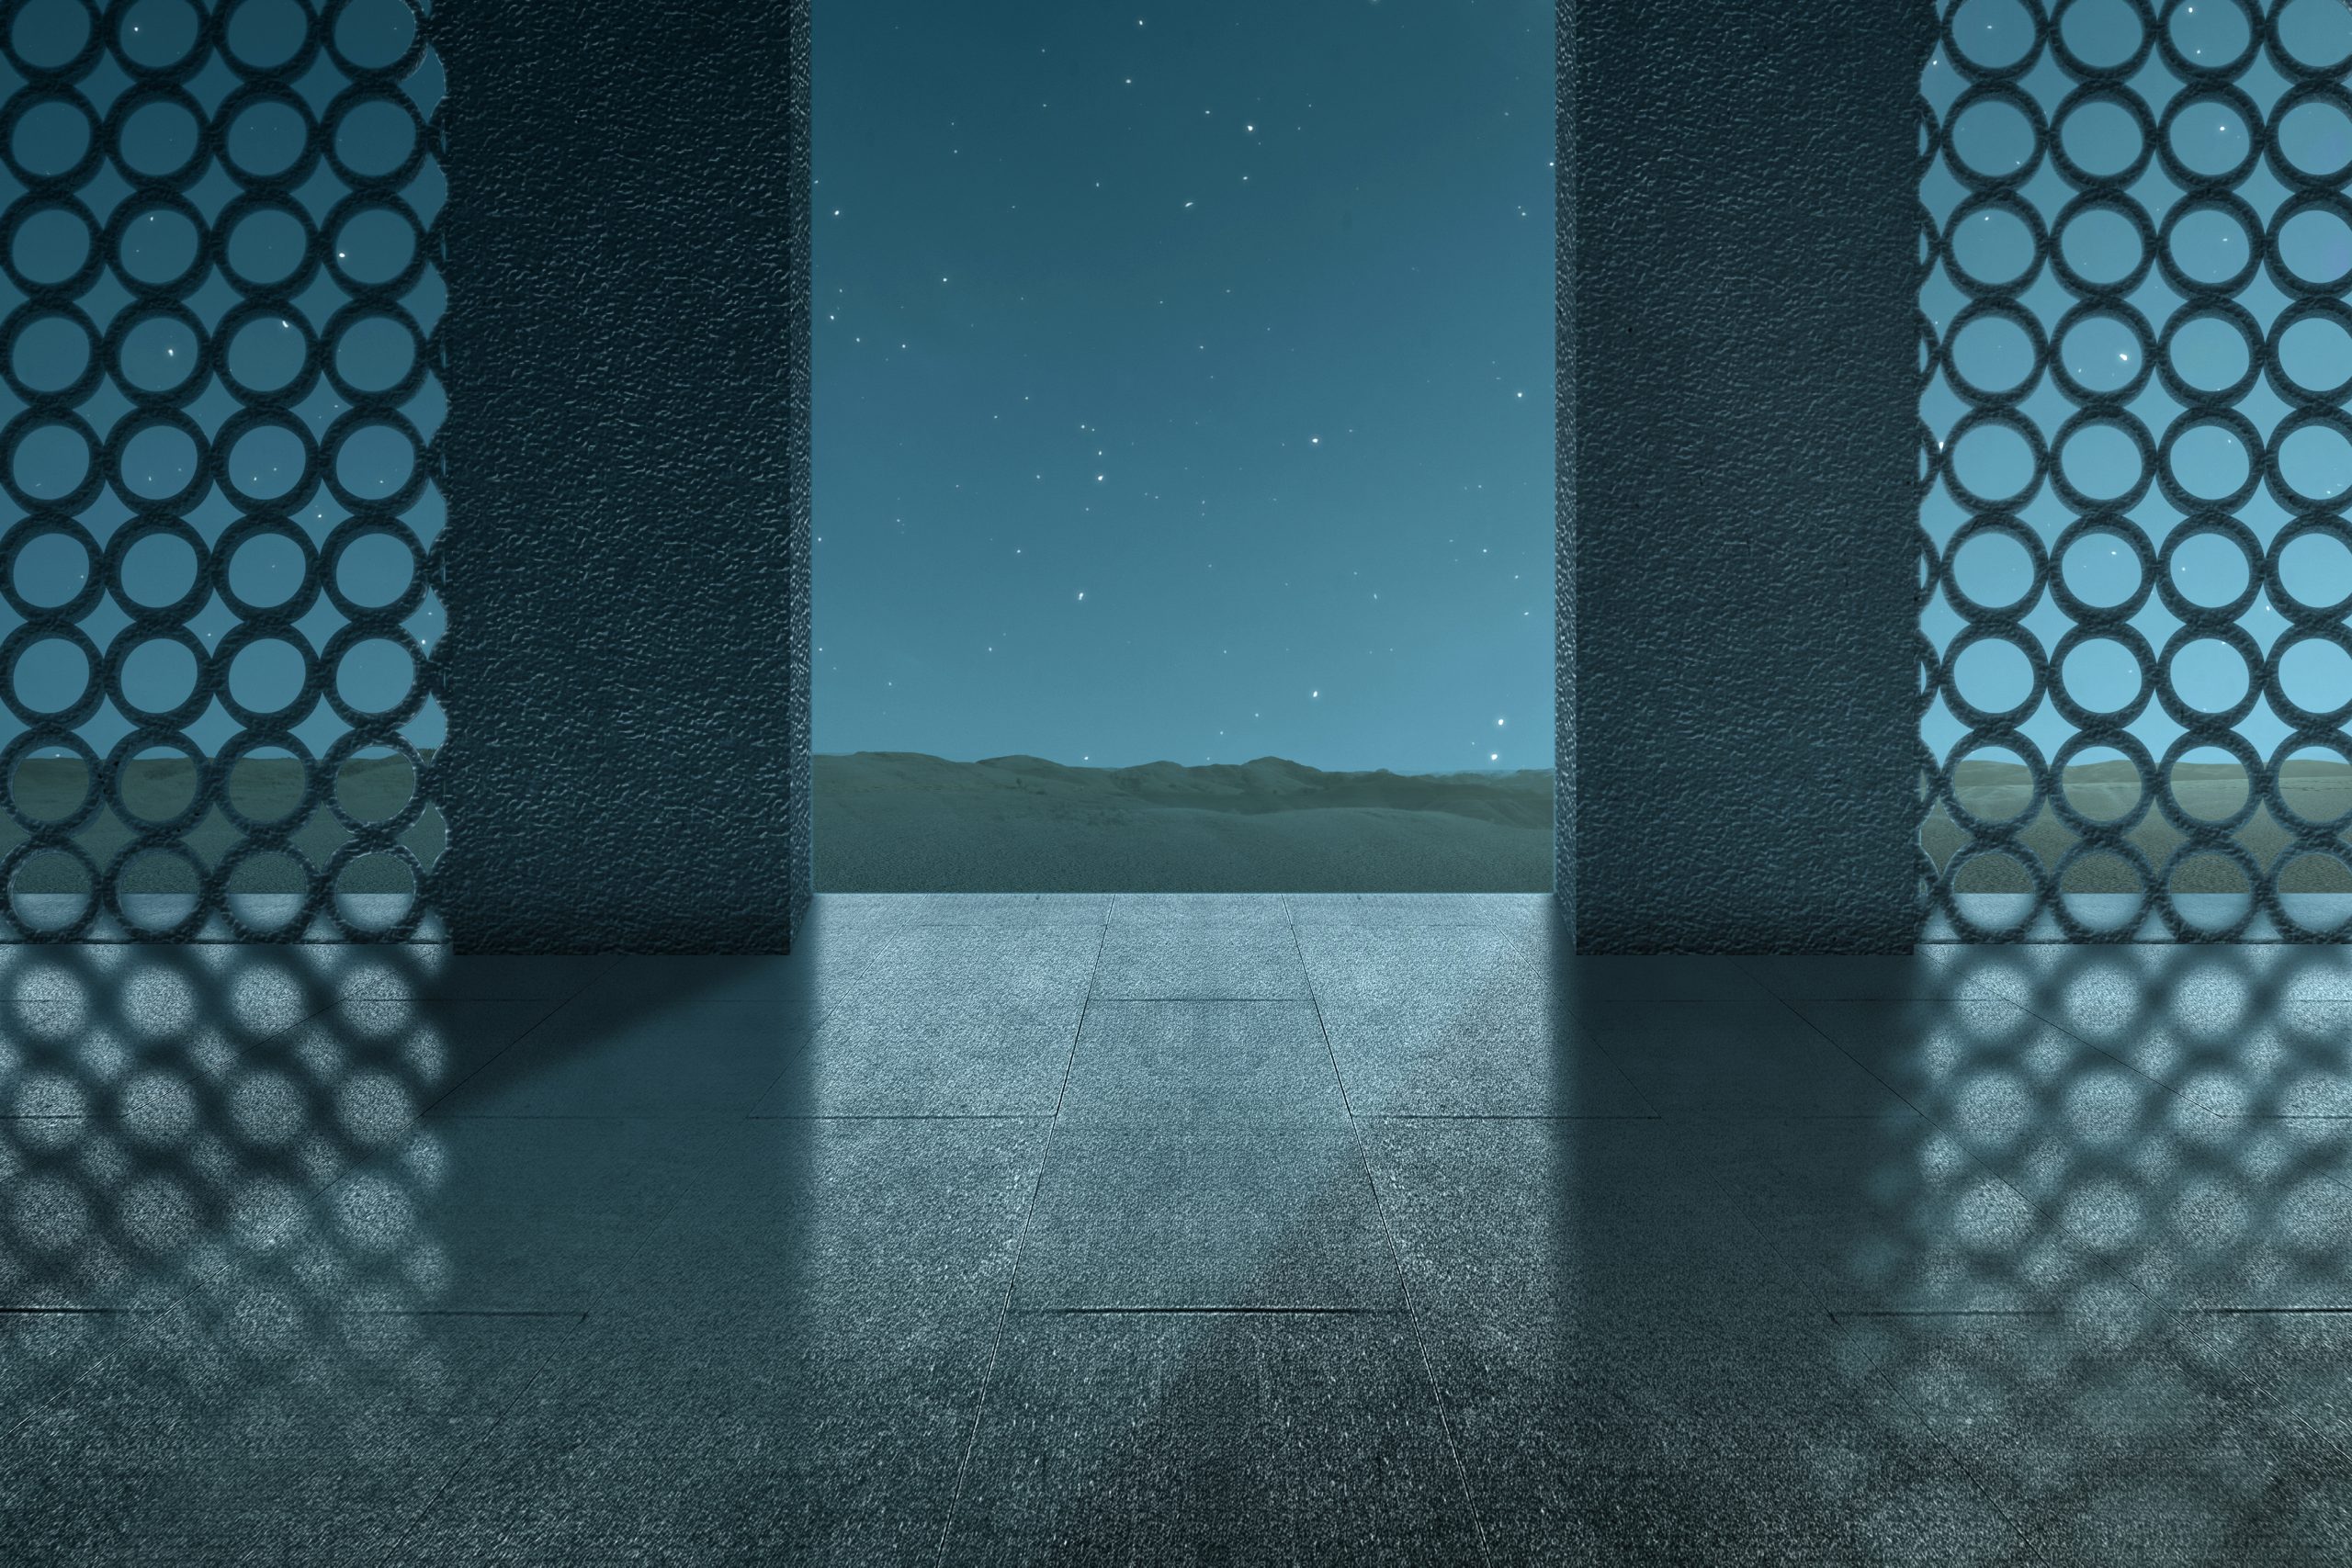 Mosque door with the night scene